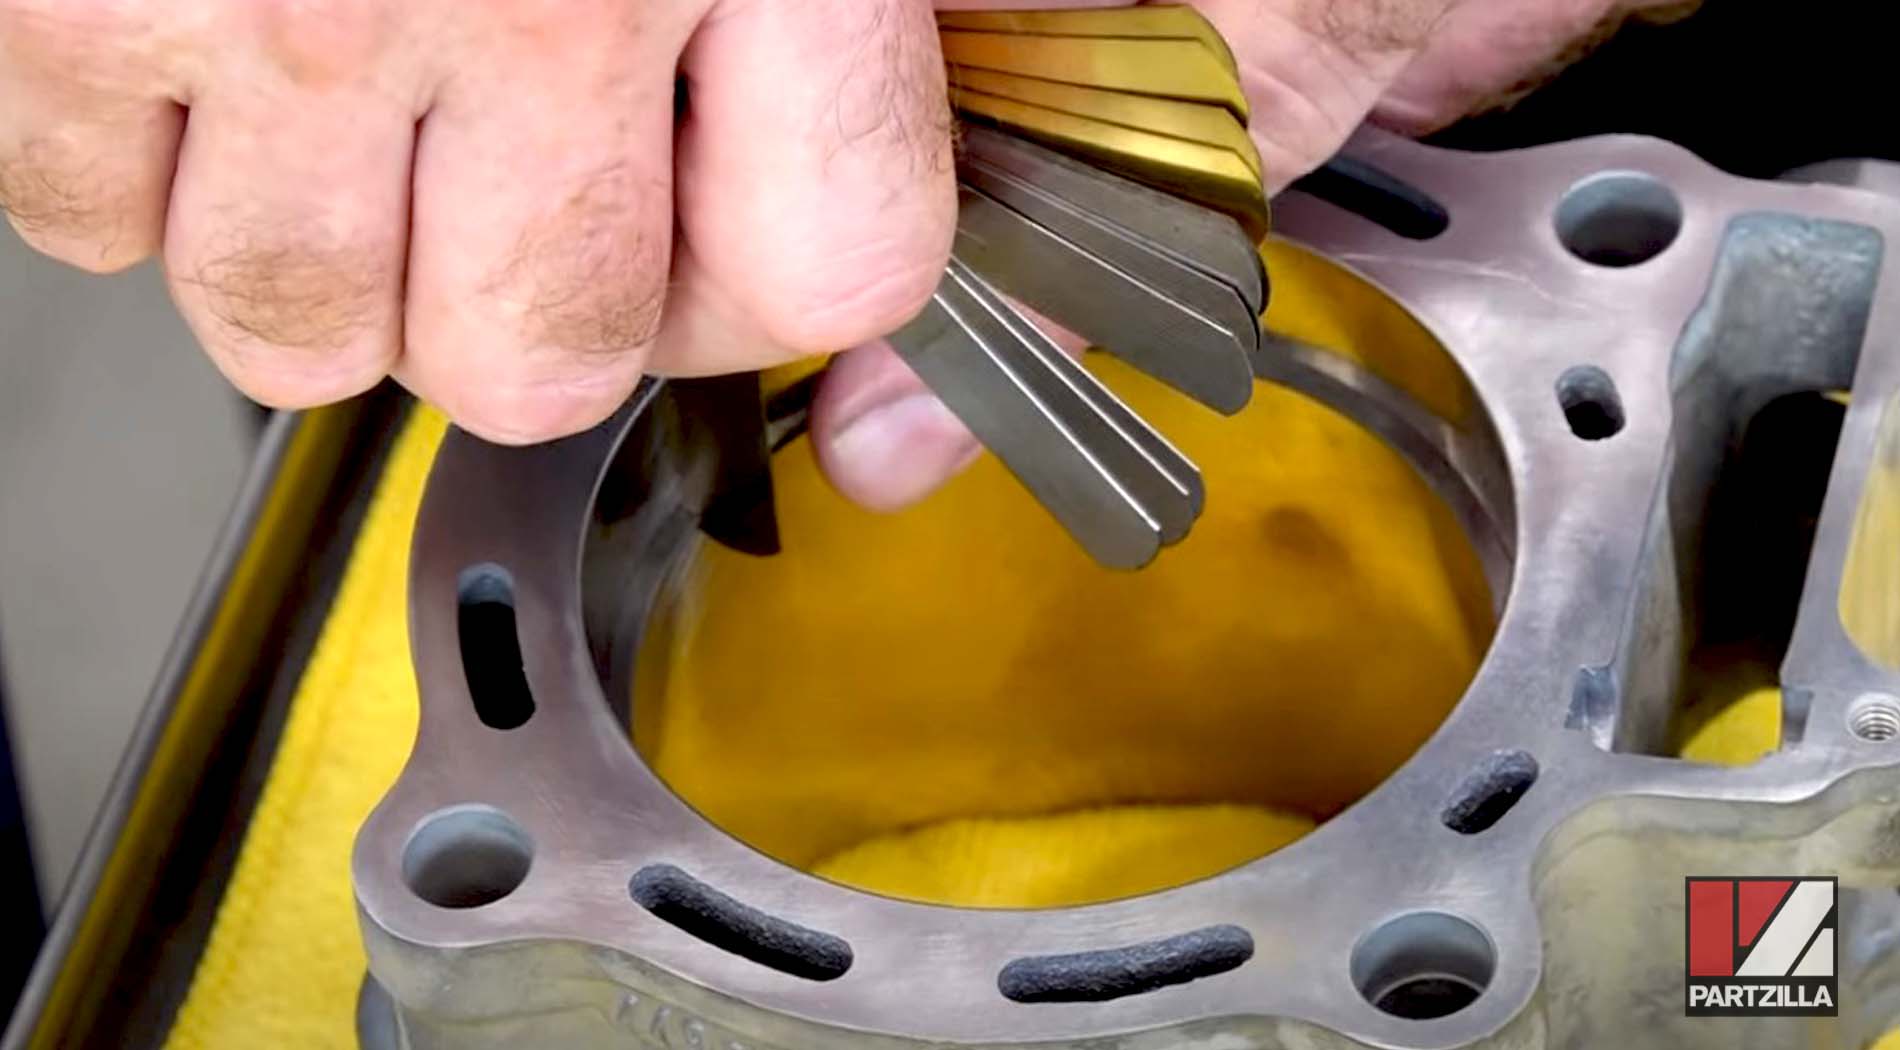 Honda CRF450 piston installation ring gap measuring